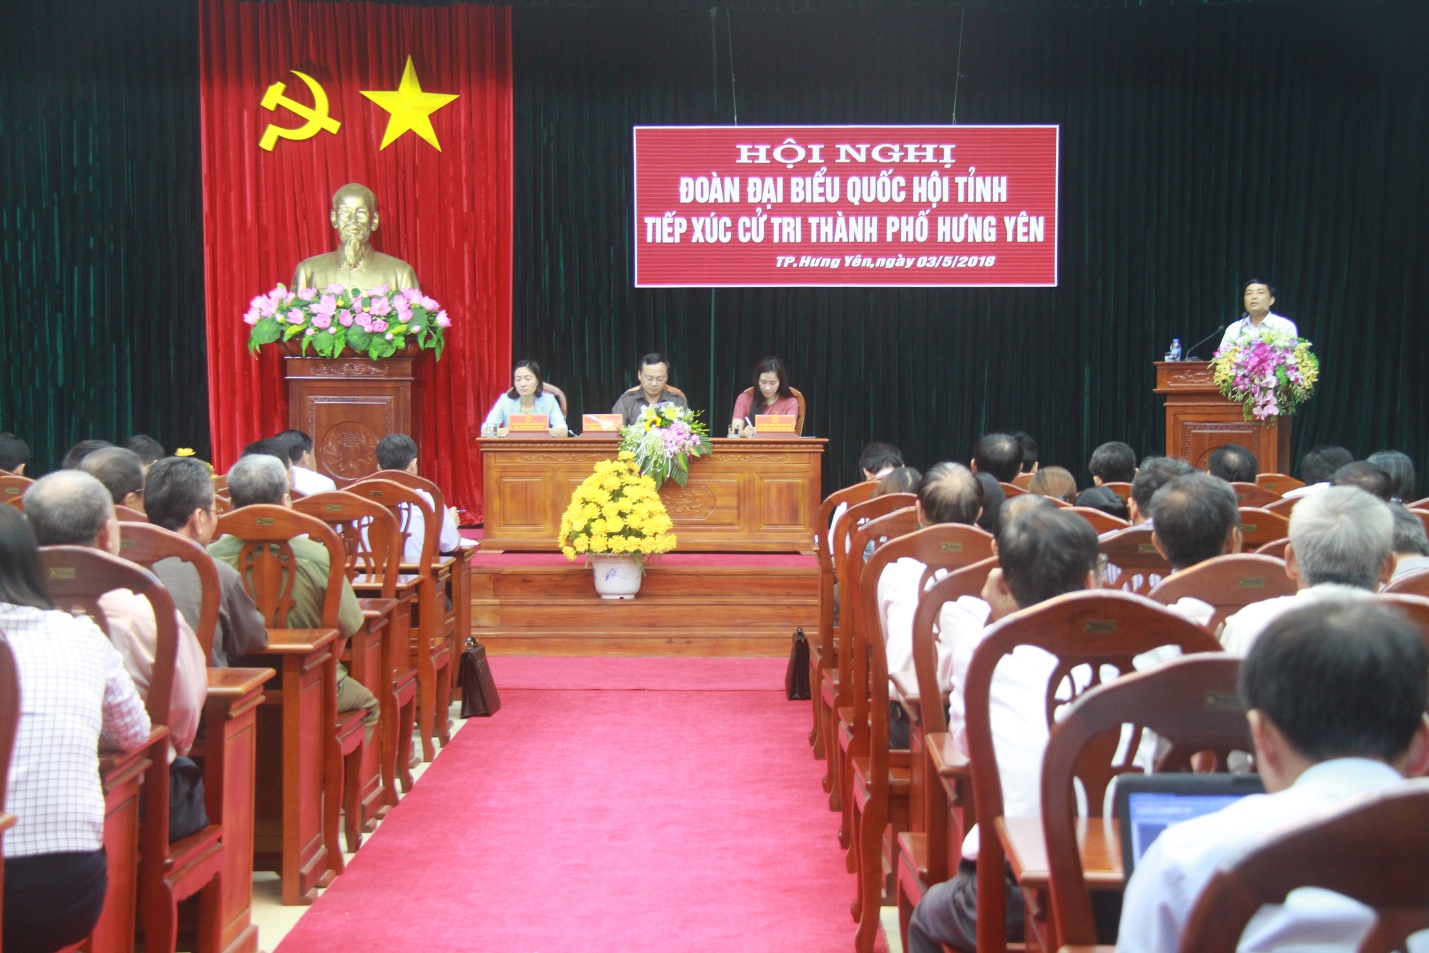 Đại biểu Quốc hội tỉnh tiếp xúc cử tri thành phố Hưng Yên